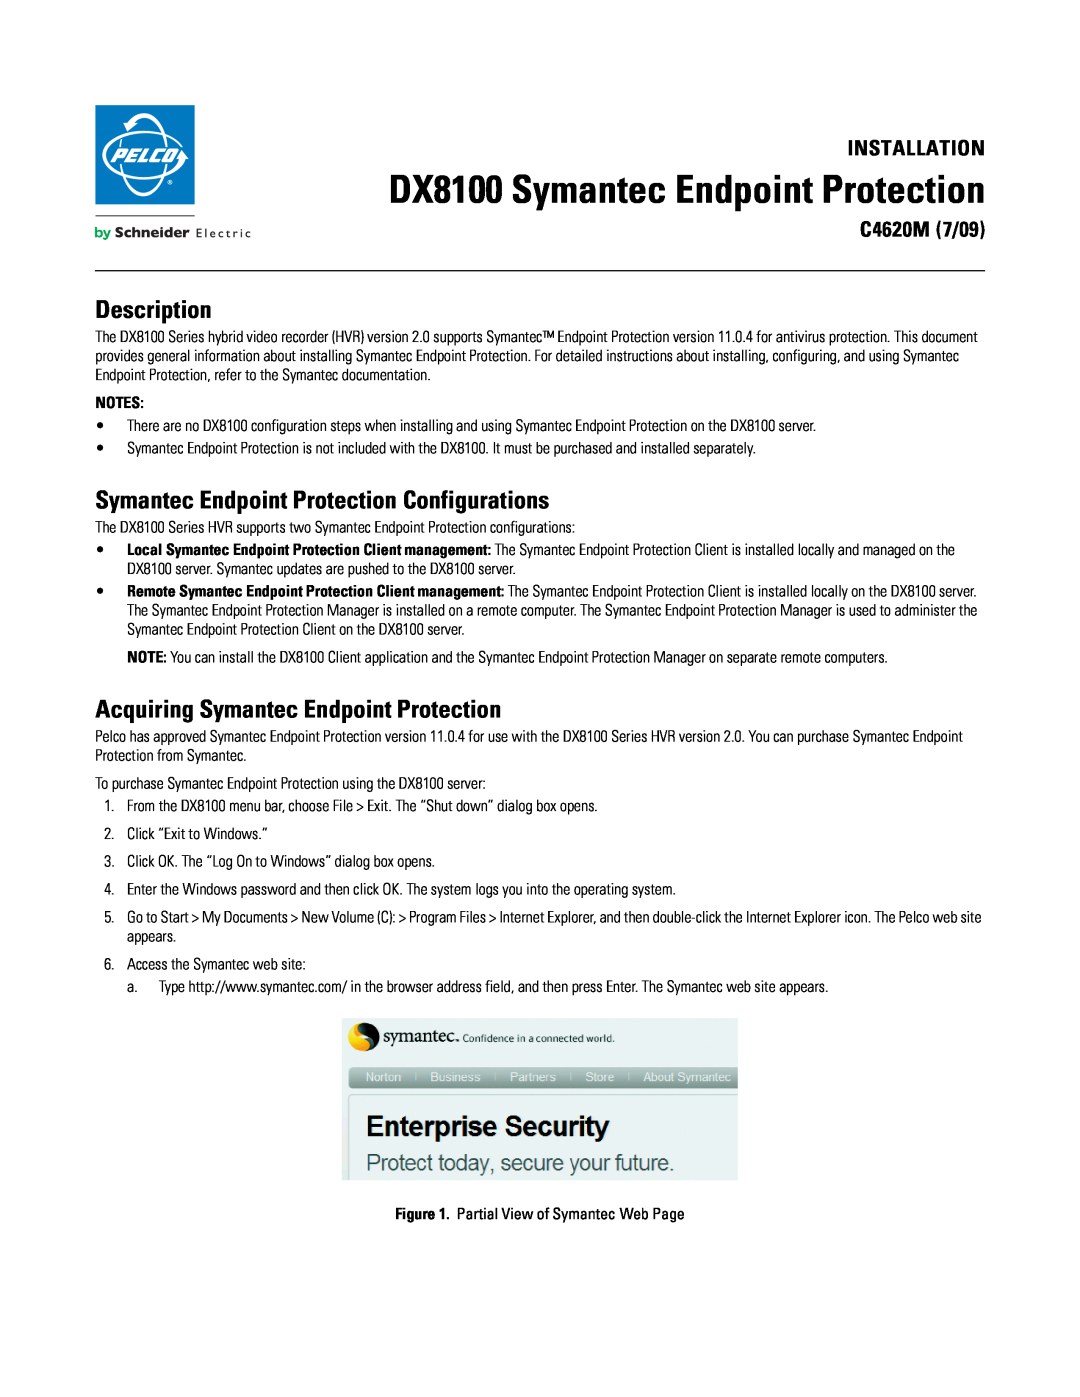 Schneider Electric dx8100 manual Description, Symantec Endpoint Protection Configurations, Installation, C4620M 7/09 